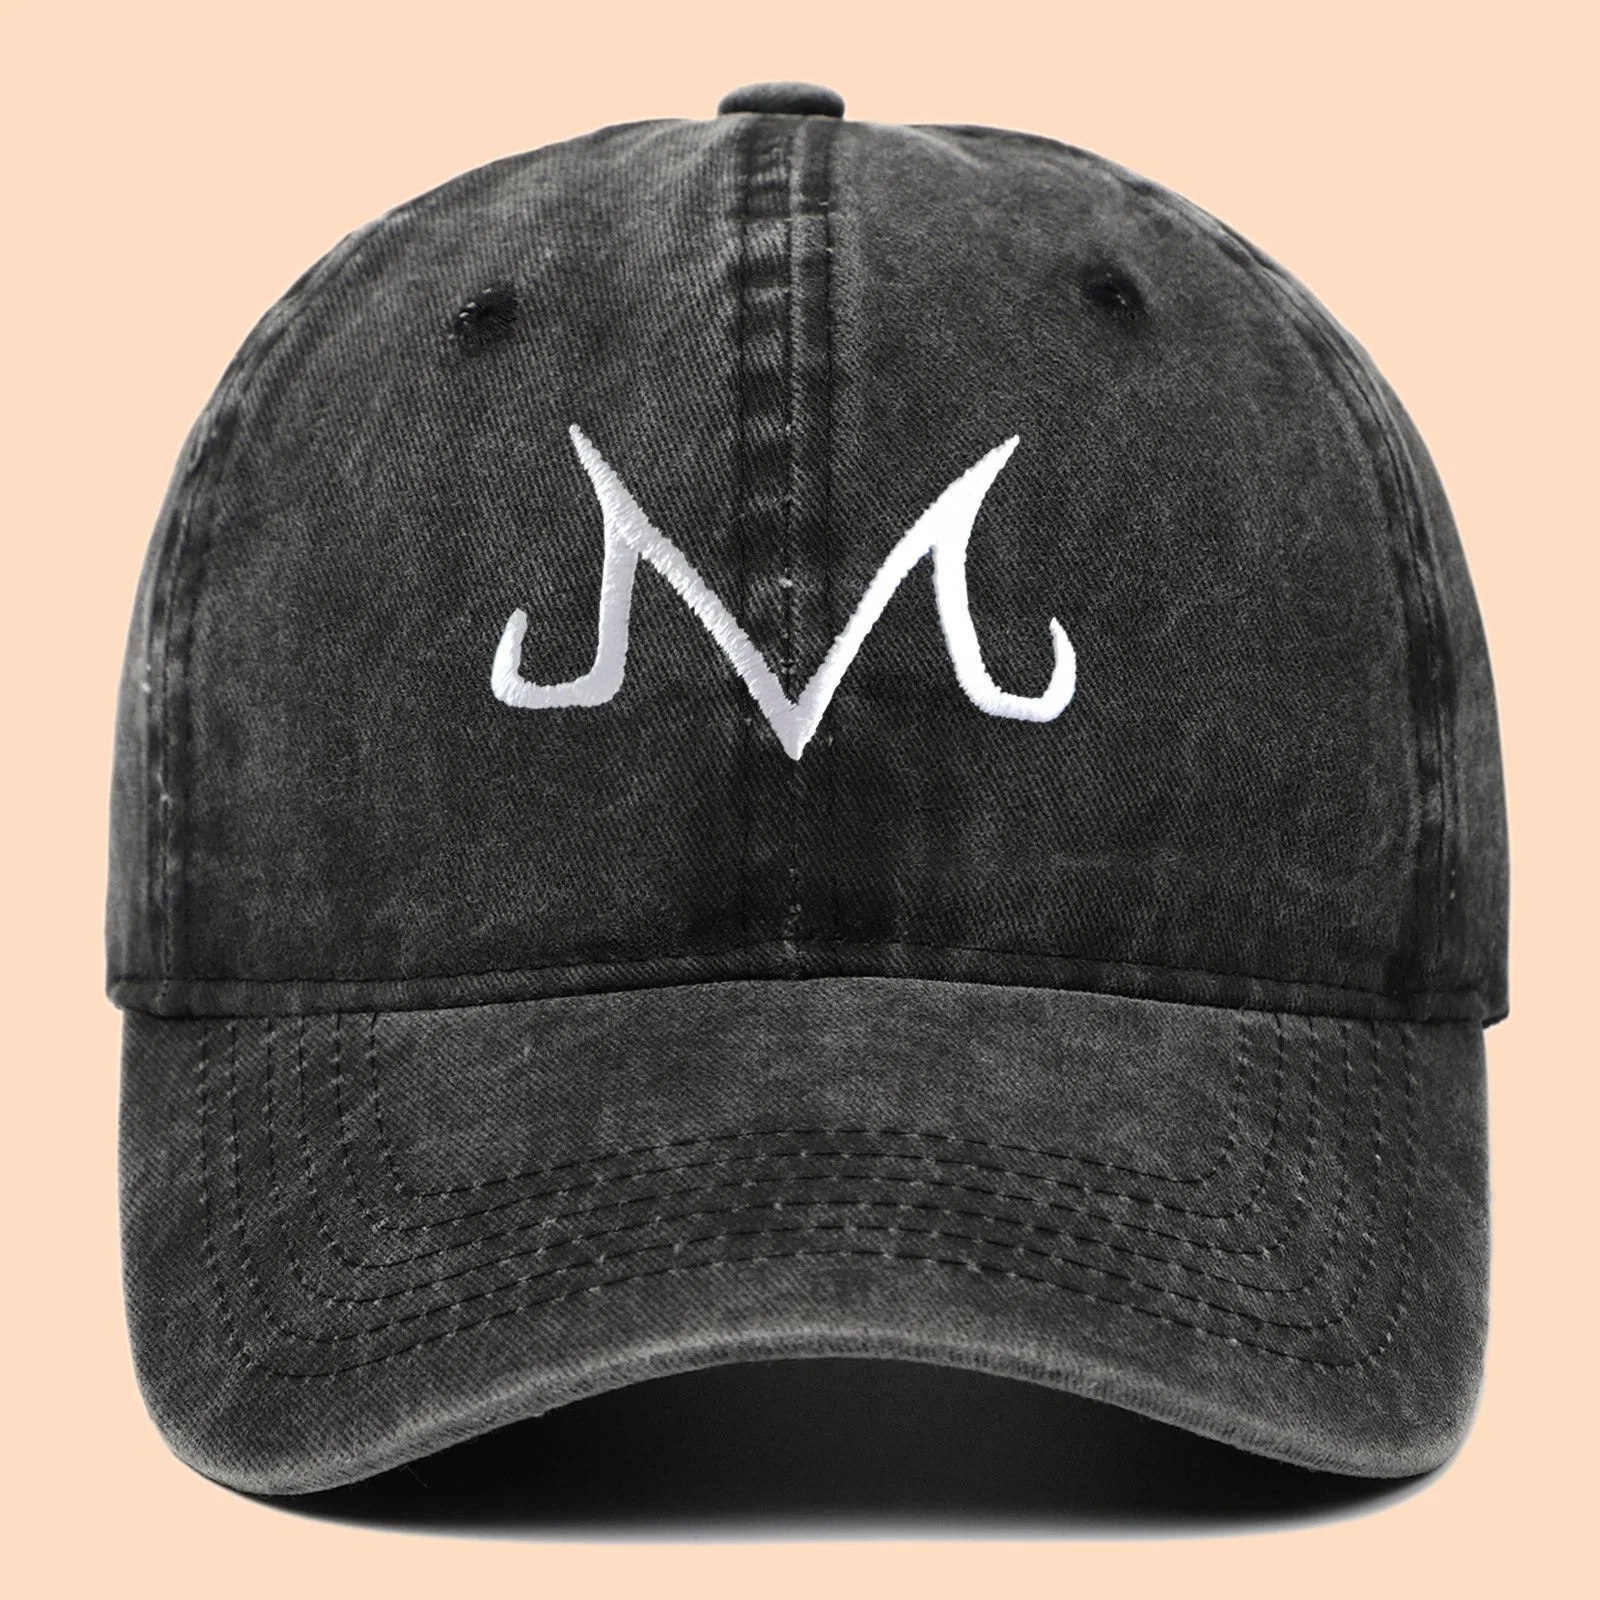 M Majin Sombrero bordado para papá Sombrero Unisex Hip-Hop ajustable Gorra de béisbol para adultos Gorras de deporte de golf